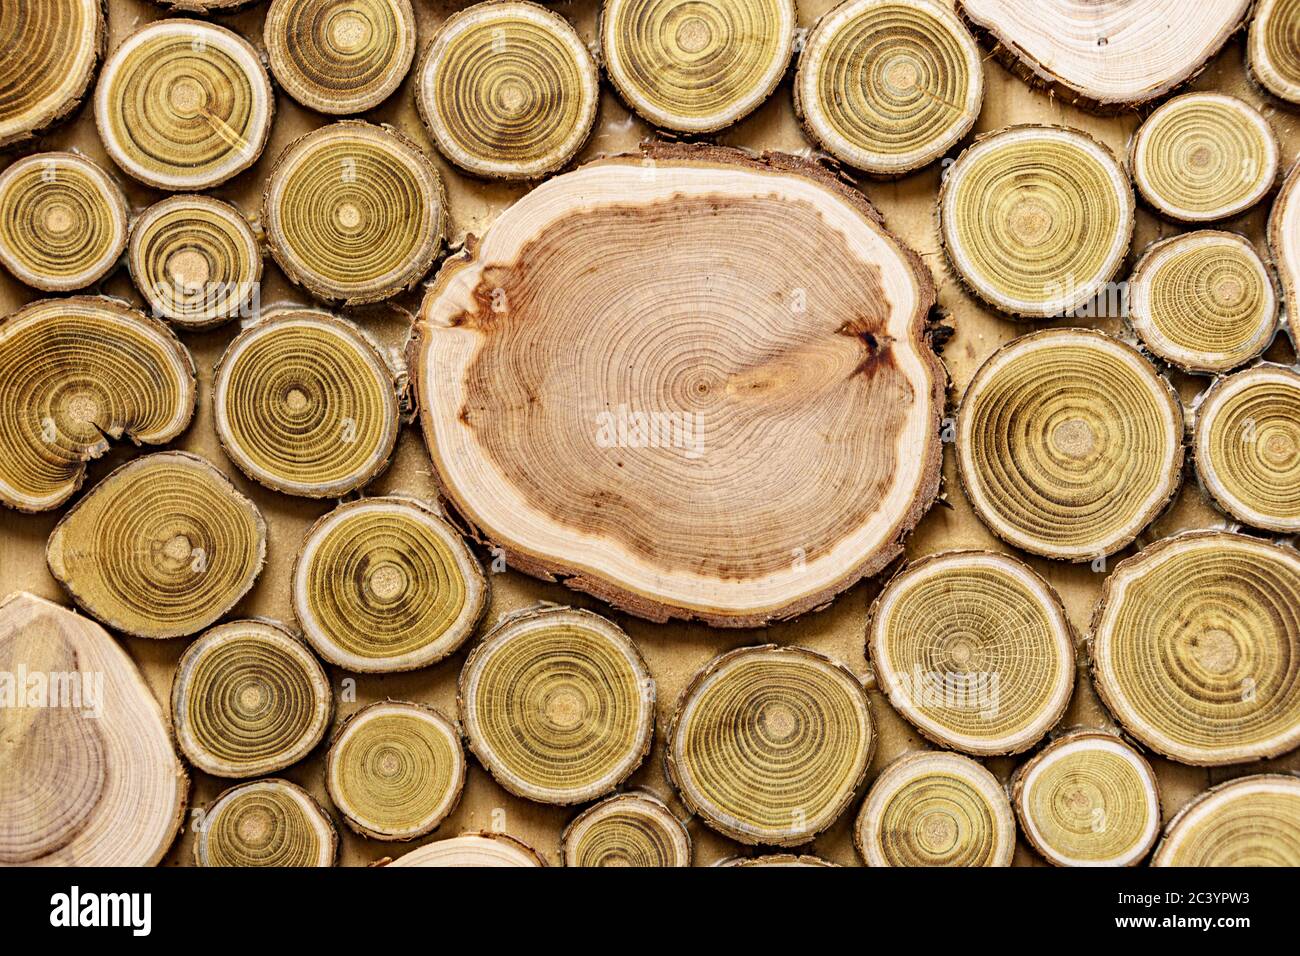 Screensaver, sfondi, texture, concetto di lavorazione del legno - uno sfondo in legno fatto di tronchi di alberi tagliati di diametri diversi sotto forma di A. Foto Stock